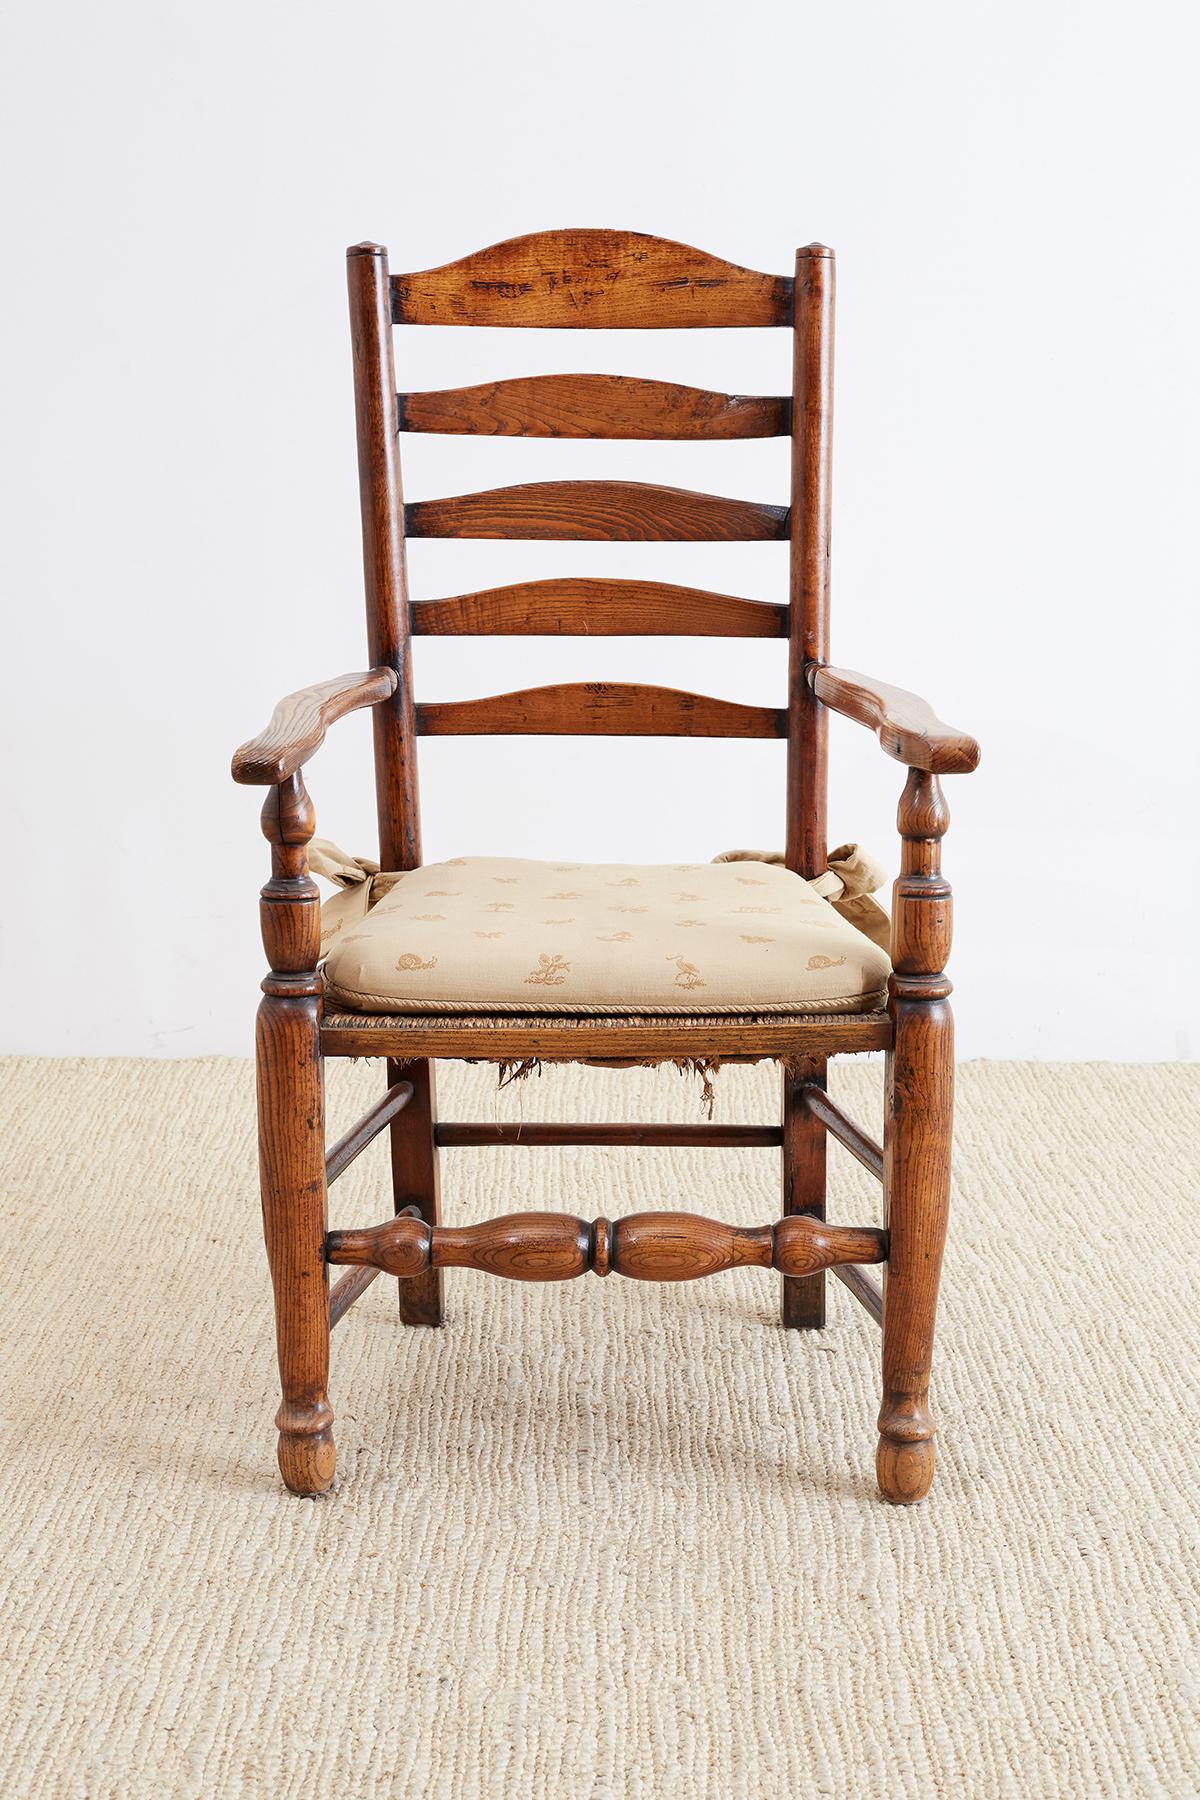 Großer englischer Sessel aus geschnitzter Eiche aus dem 19. Jahrhundert mit Leiterrücken und Sitz aus Binsen. Sitzt auf massiven gedrechselten Beinen mit Kastenstreckung. Breite Armlehnen und eine warme, satte Patina auf dem Vintage-Holz. Aus dem